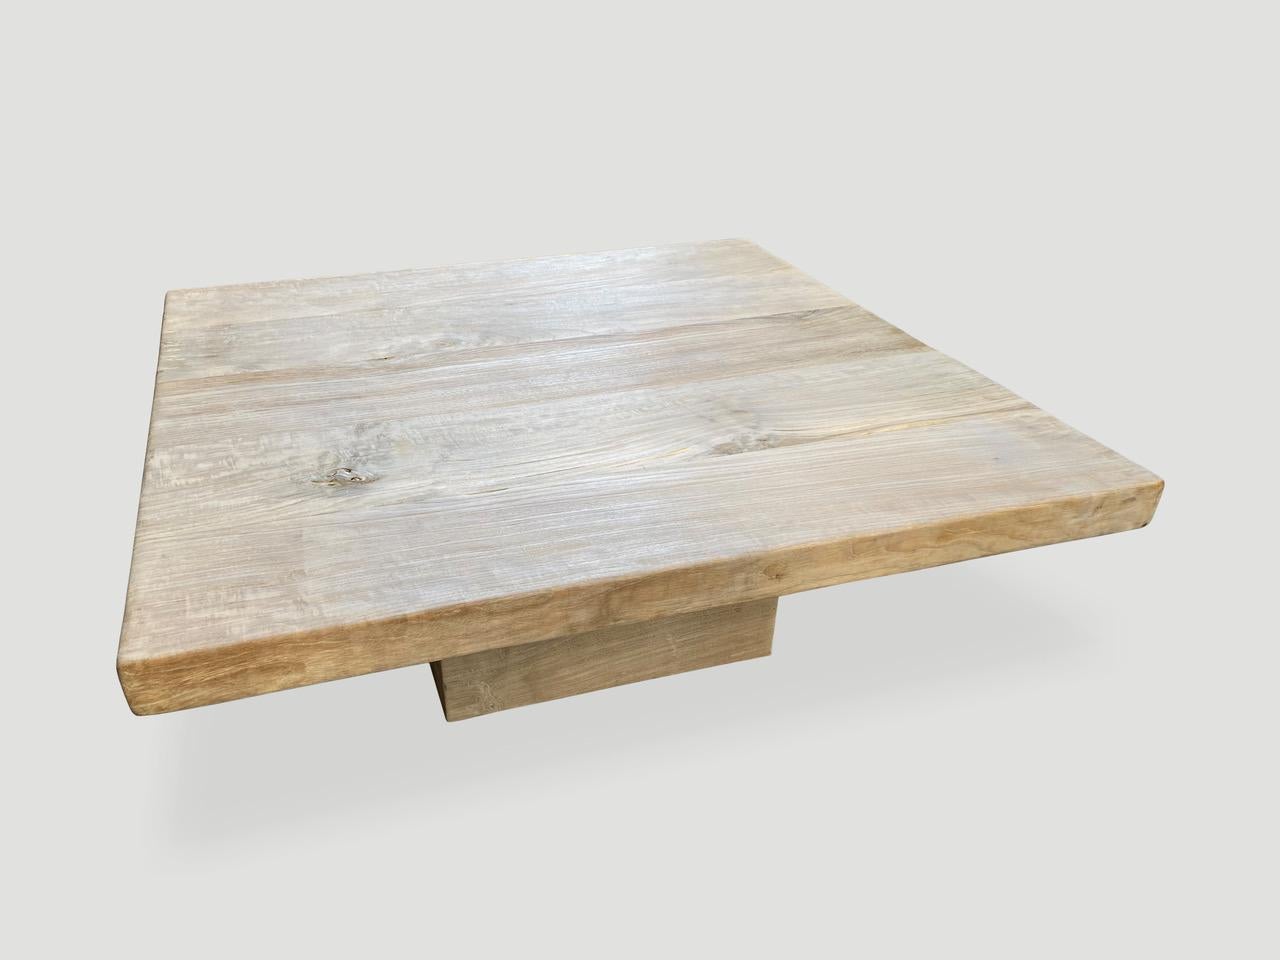 Magnifique table basse en teck recyclé blanchi avec une fine finition en blanc. Nous avons ajouté des incrustations de papillons dans le bois pour joindre les dalles de teck de 2,5 pouces d'épaisseur pour cette impressionnante table basse.

La